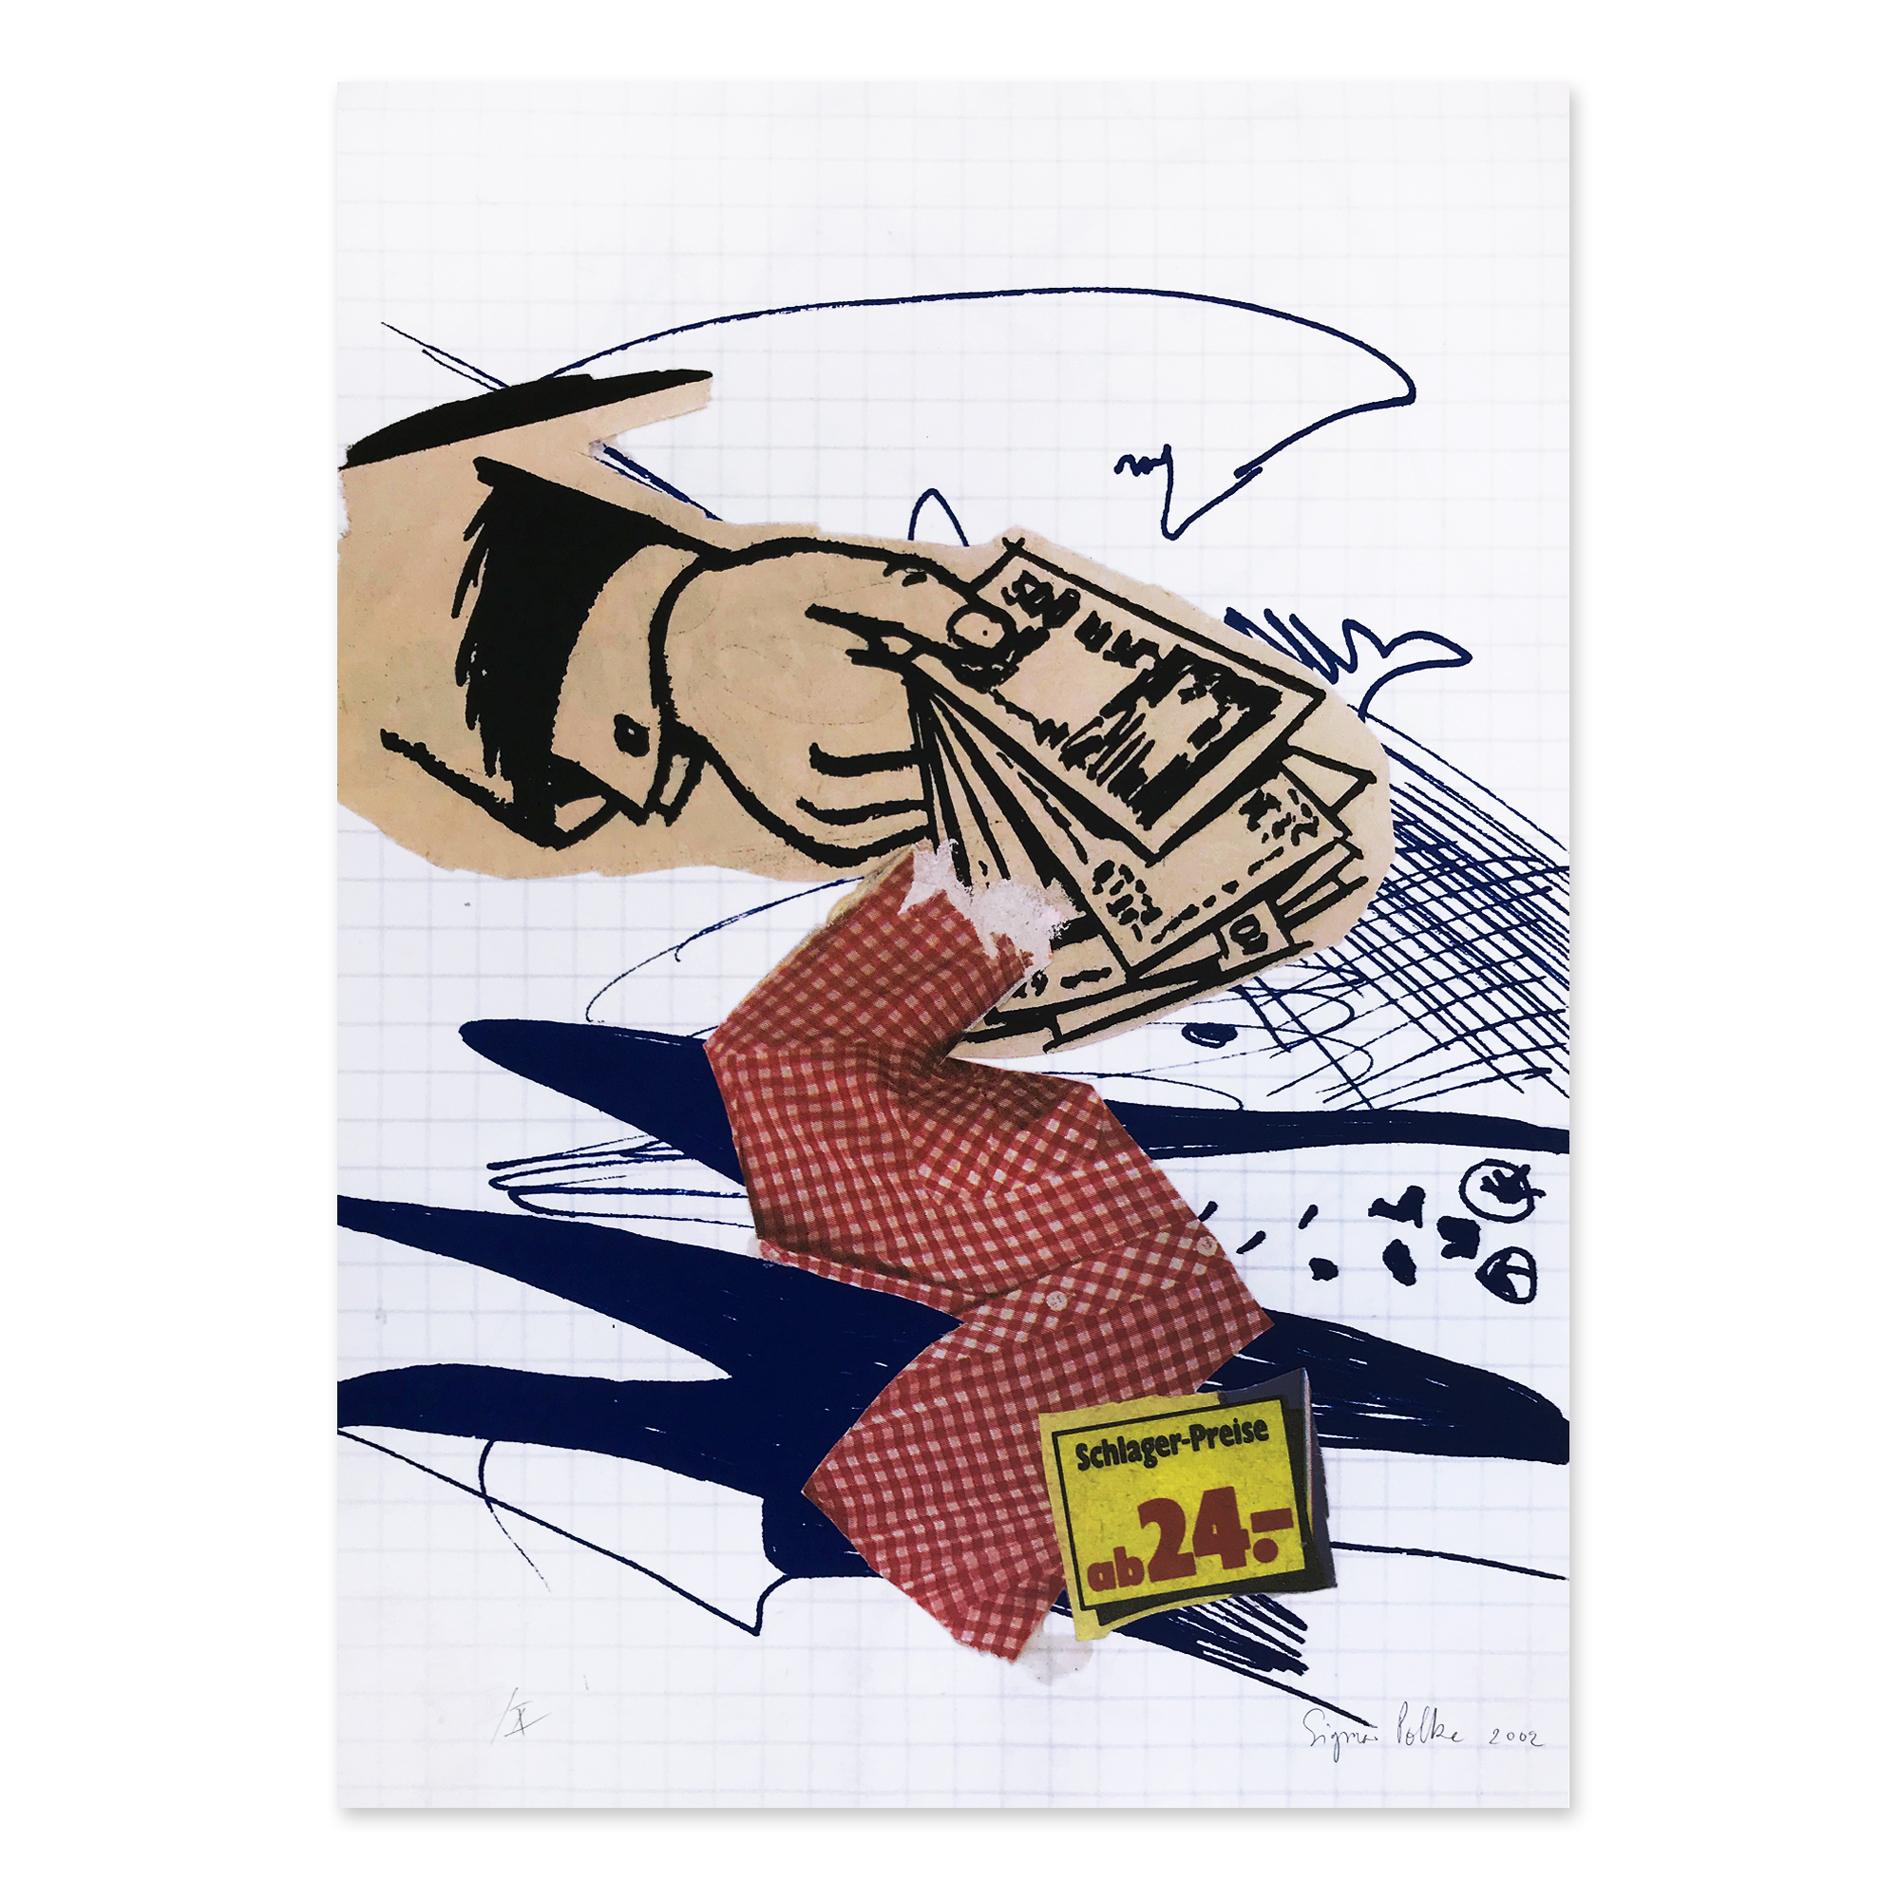 Sigmar Polke (Deutscher, 1941 - 2010)
Bargeld Lacht, 2002
Medium: Farboffset- und Siebdruck auf Karton
Abmessungen: 70 × 50 cm
Auflage von 70 + X: handsigniert, nummeriert und datiert
Zustand: Ausgezeichnet